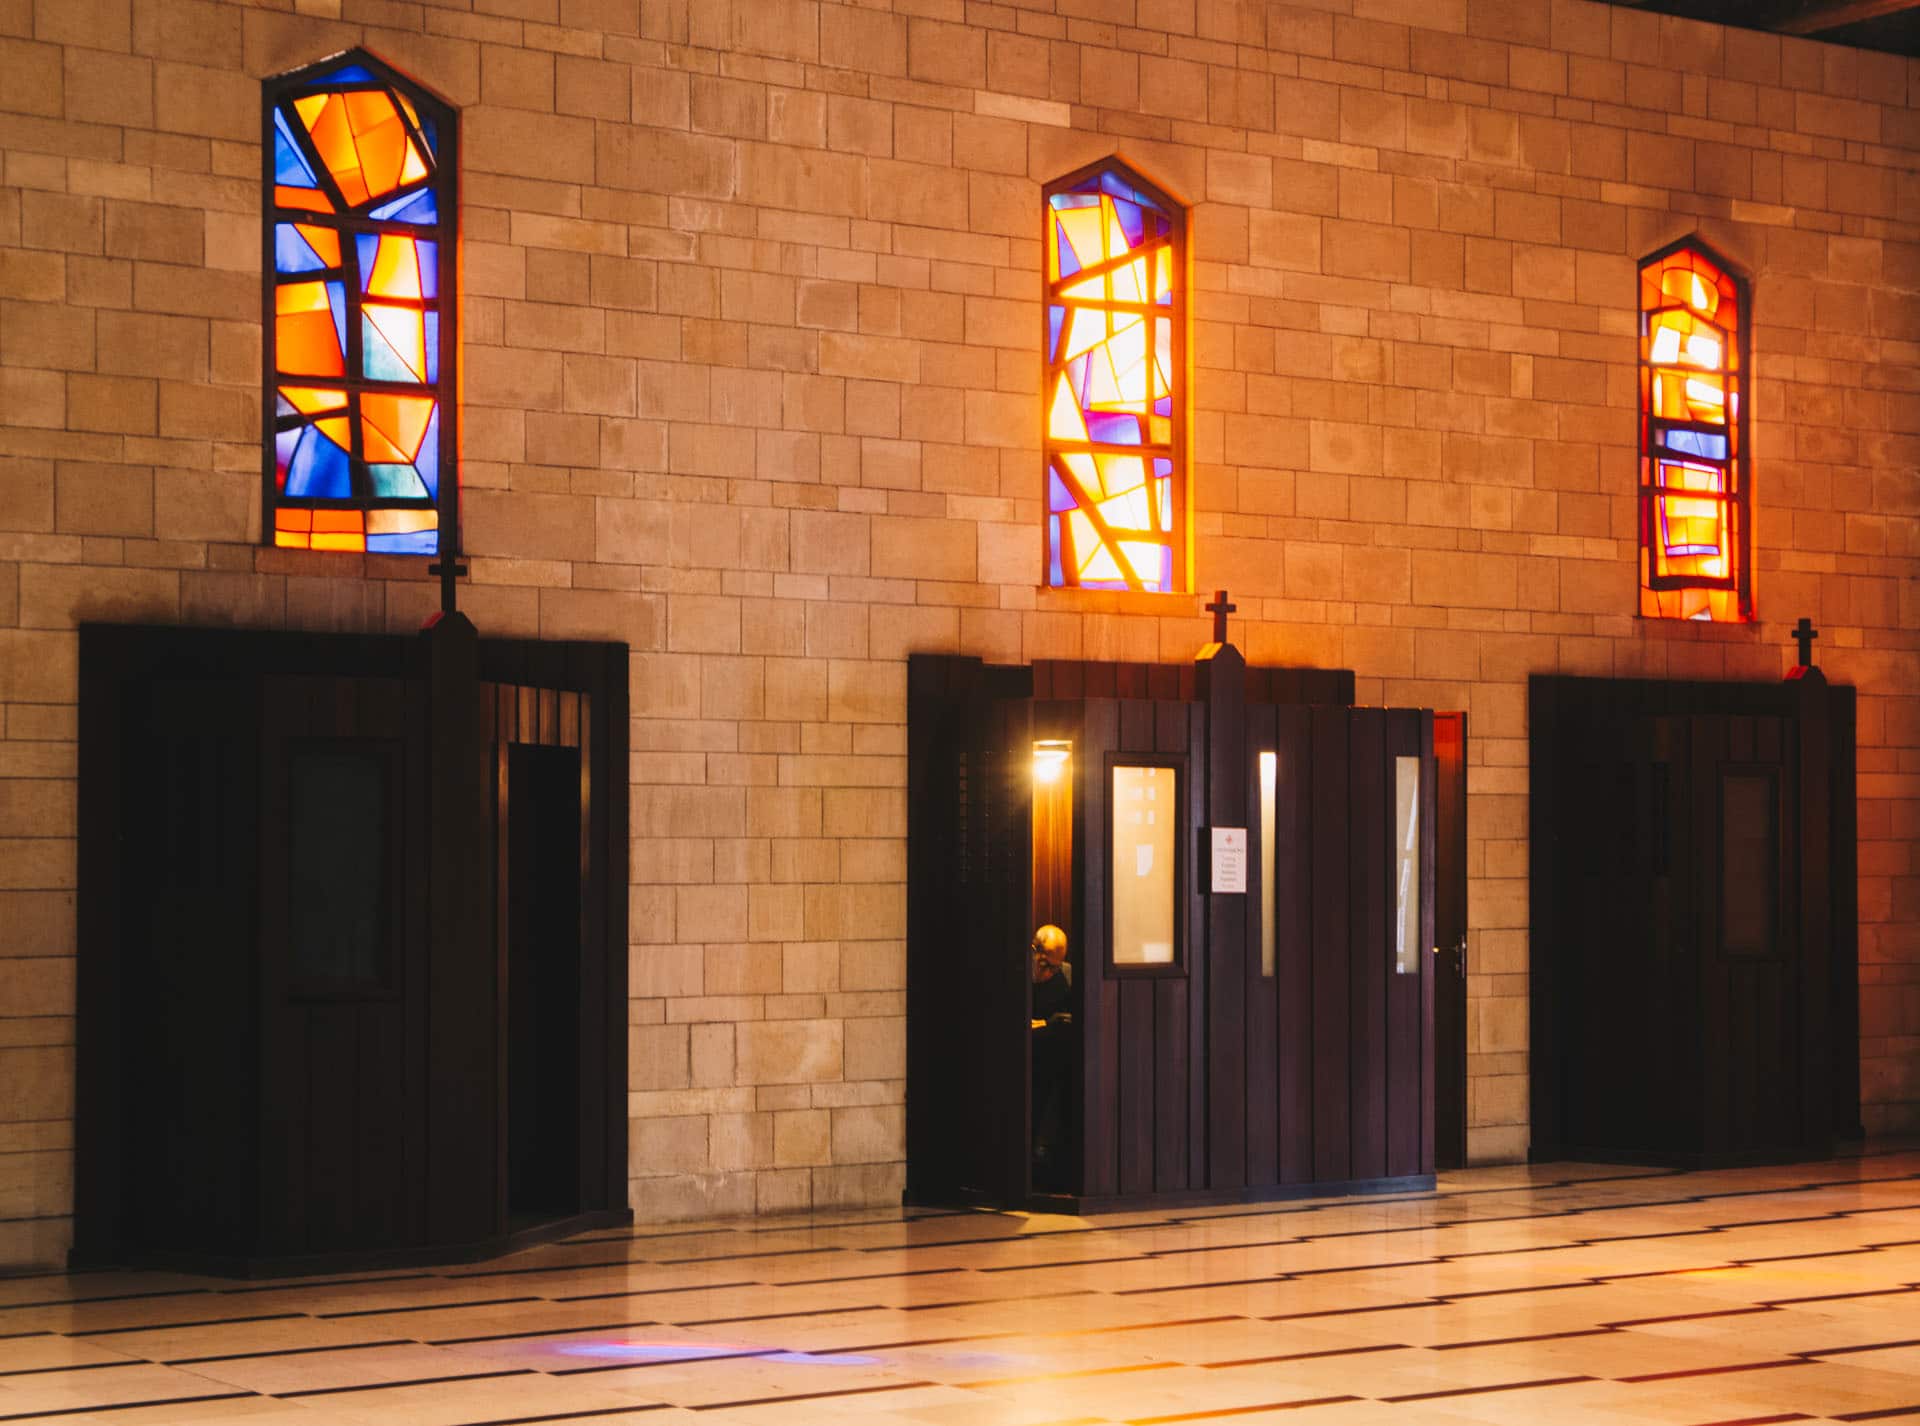 Bazylika Zwiastowania Pańskiego w Nazarecie